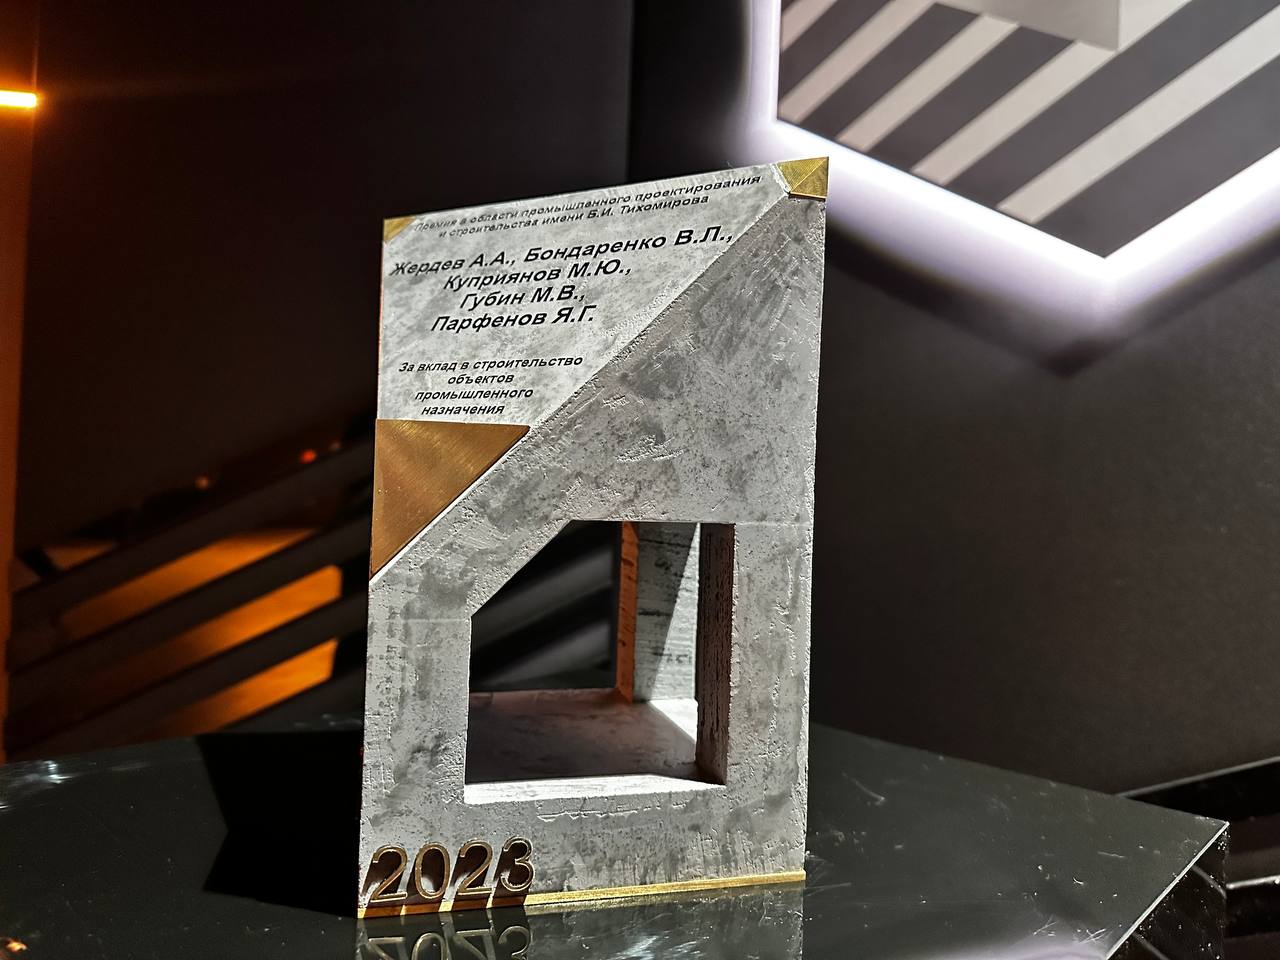 Разработчики стендовой базы для ПАК ДА стали лауреатами премии имени Б.И. Тихомирова